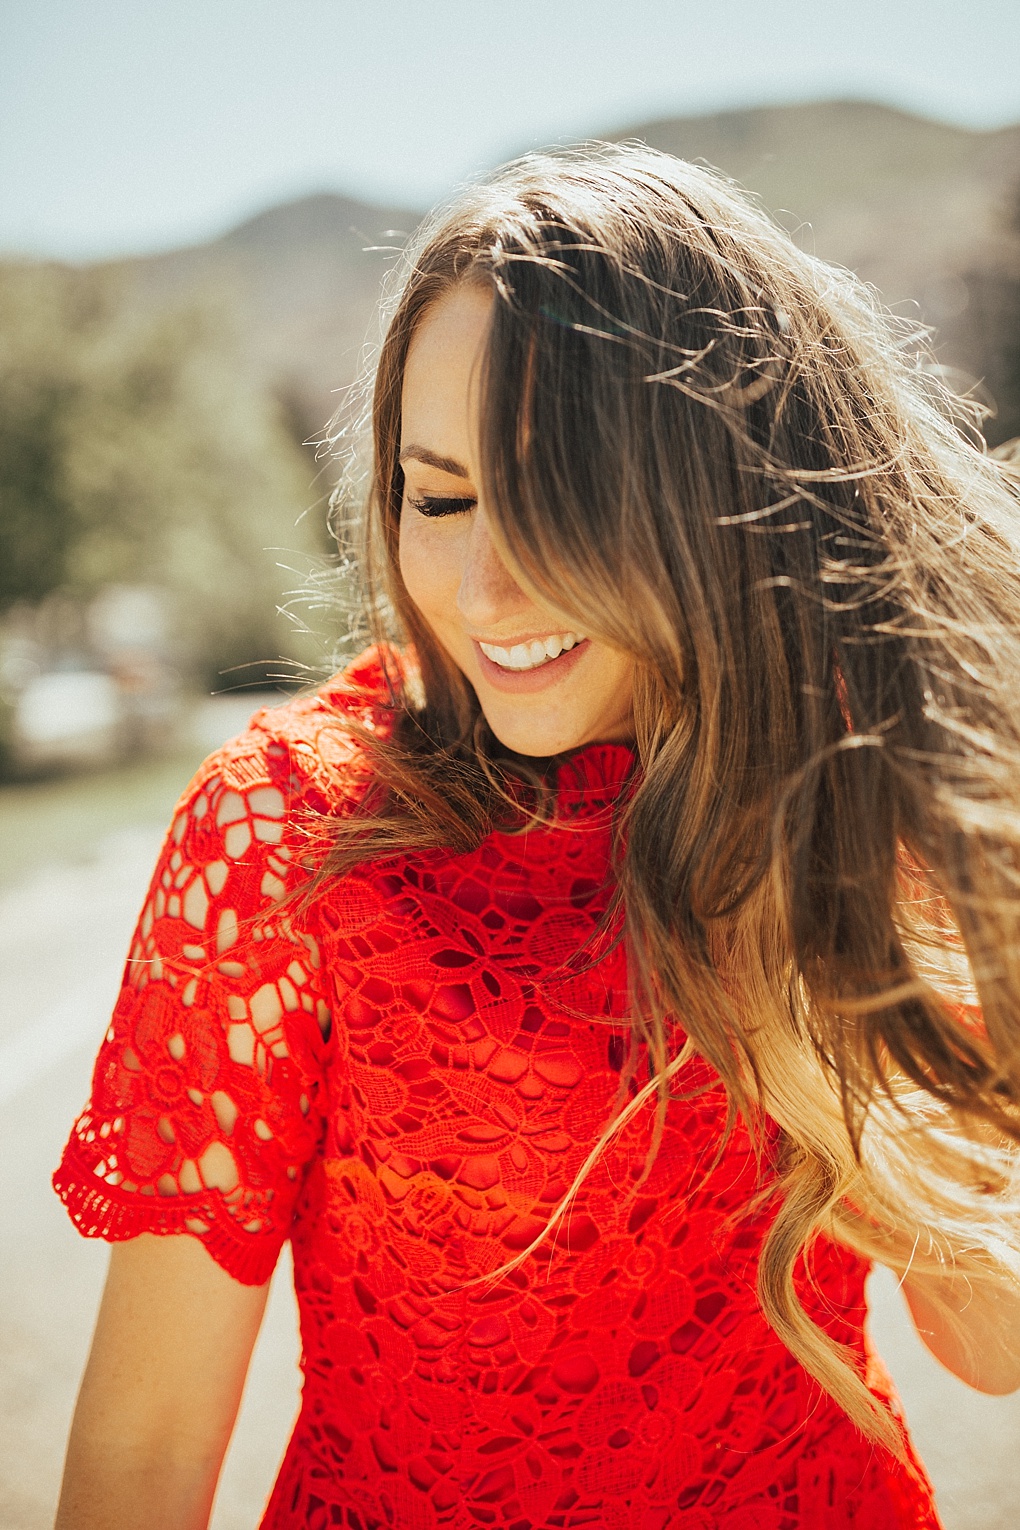 Stylish Red Lace Dress: Dressing Up On Sundays by Utah fashion blogger Dani Marie